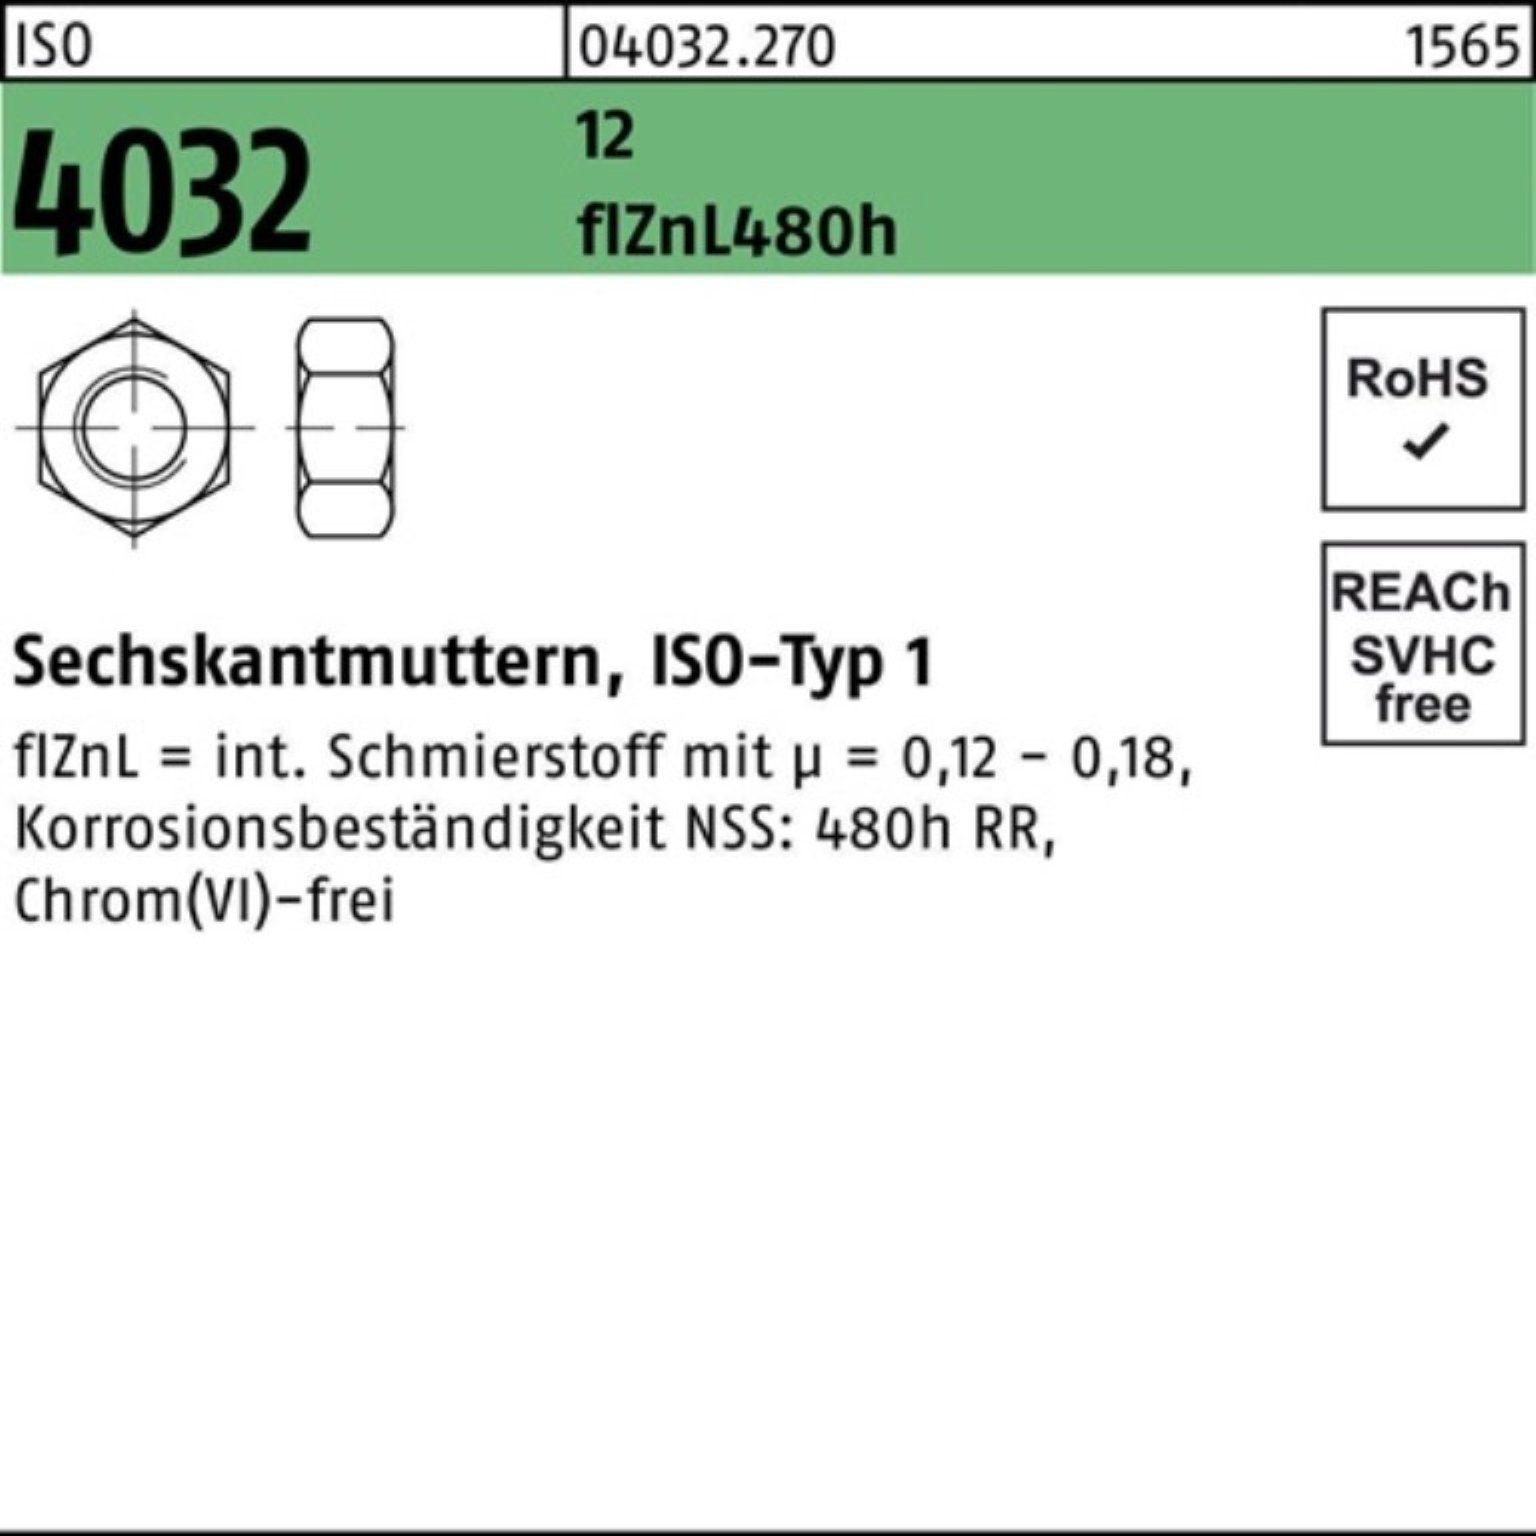 4032 1 M16 flZnL Sechskantmutter Pack 12 480h zinklamellenb. Bufab Muttern 100er ISO